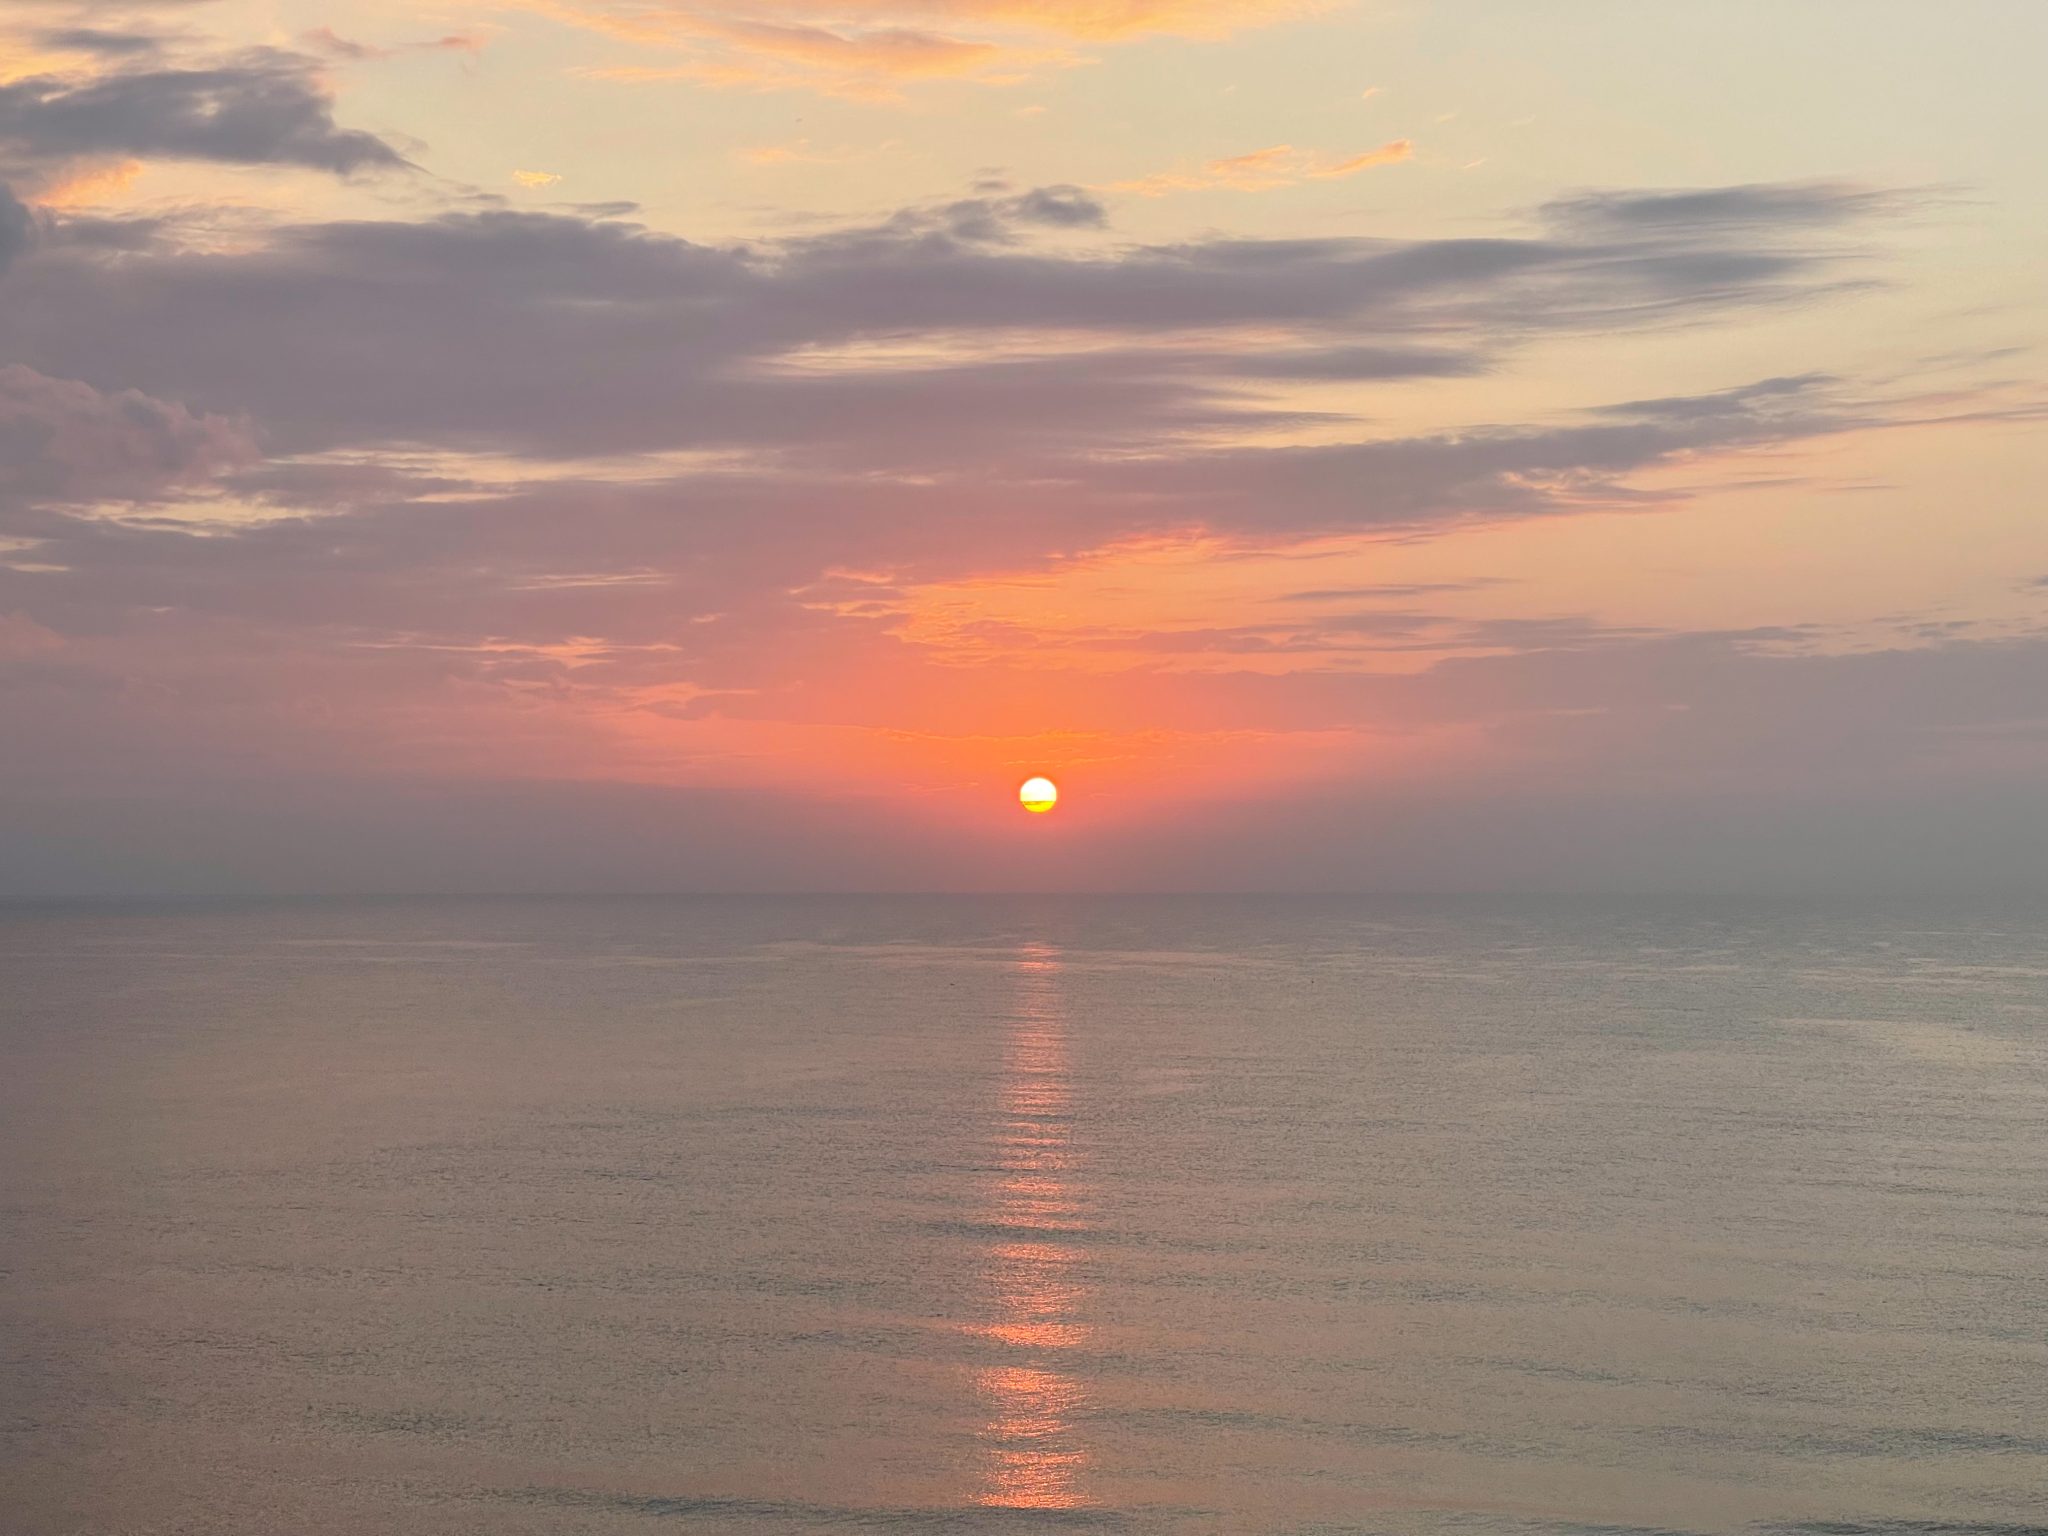 Sunrise over the Atlantic Ocean in Daytona Beach